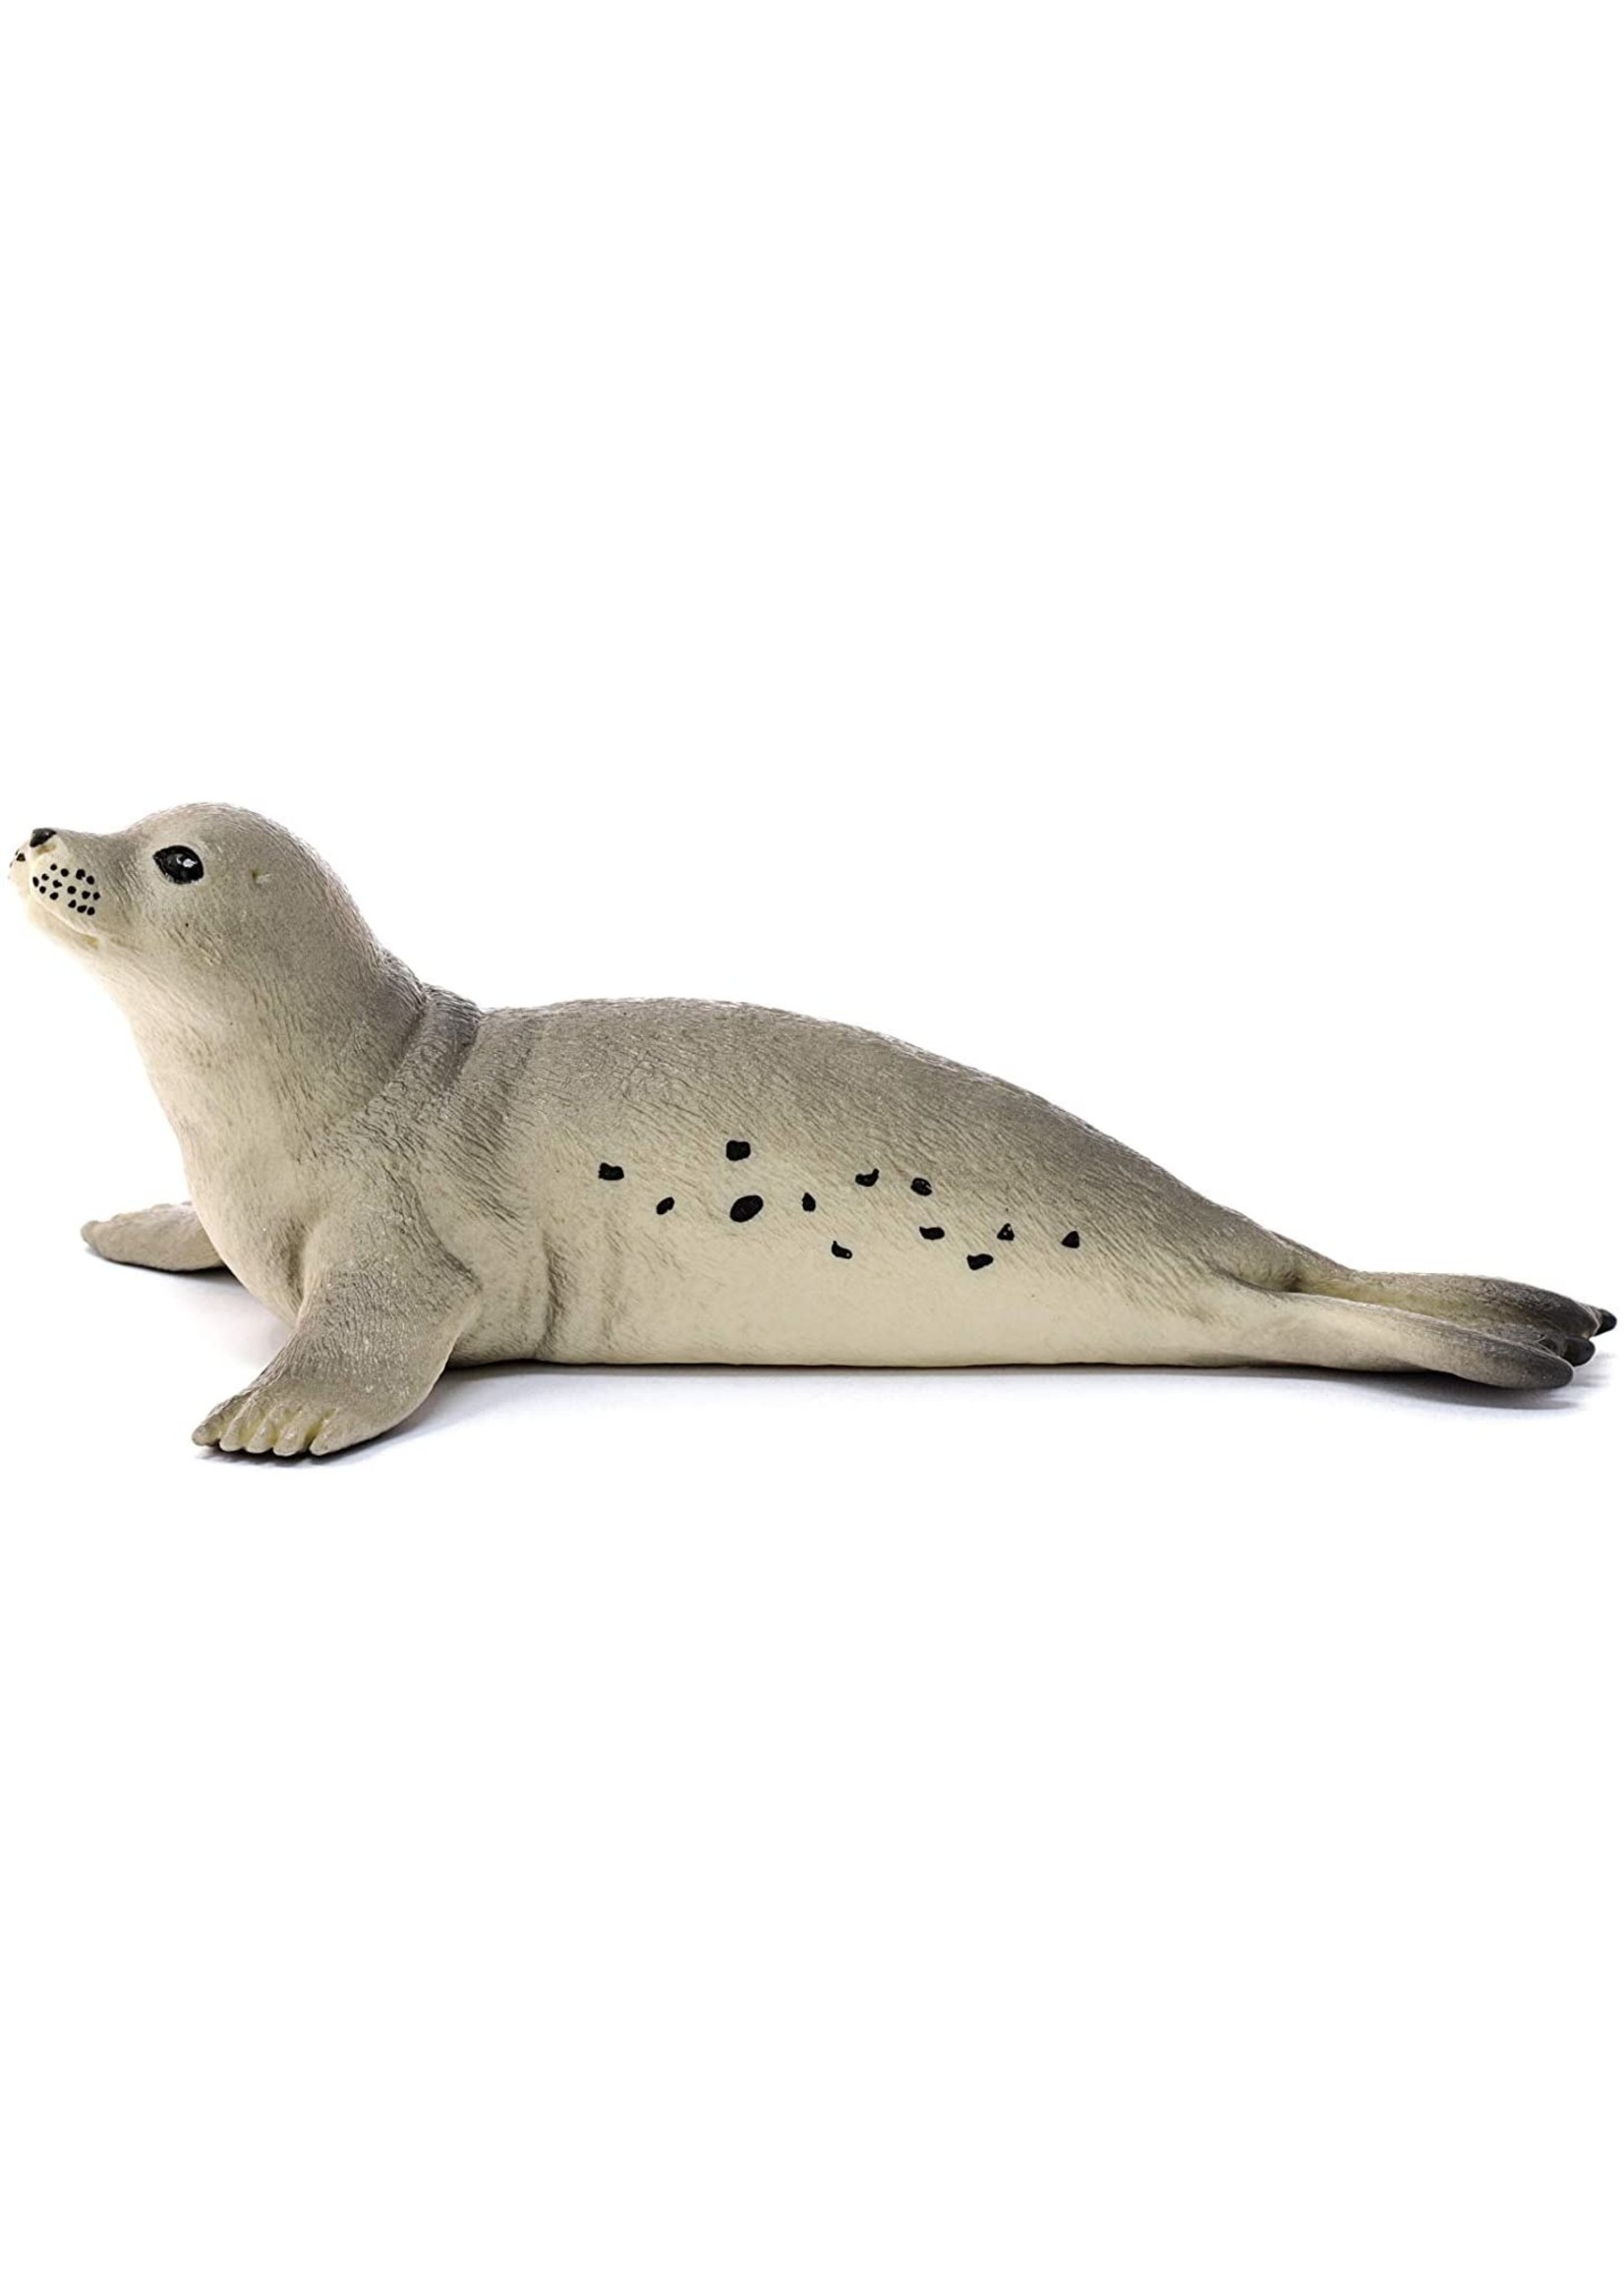 Schleich 14801 - Seal